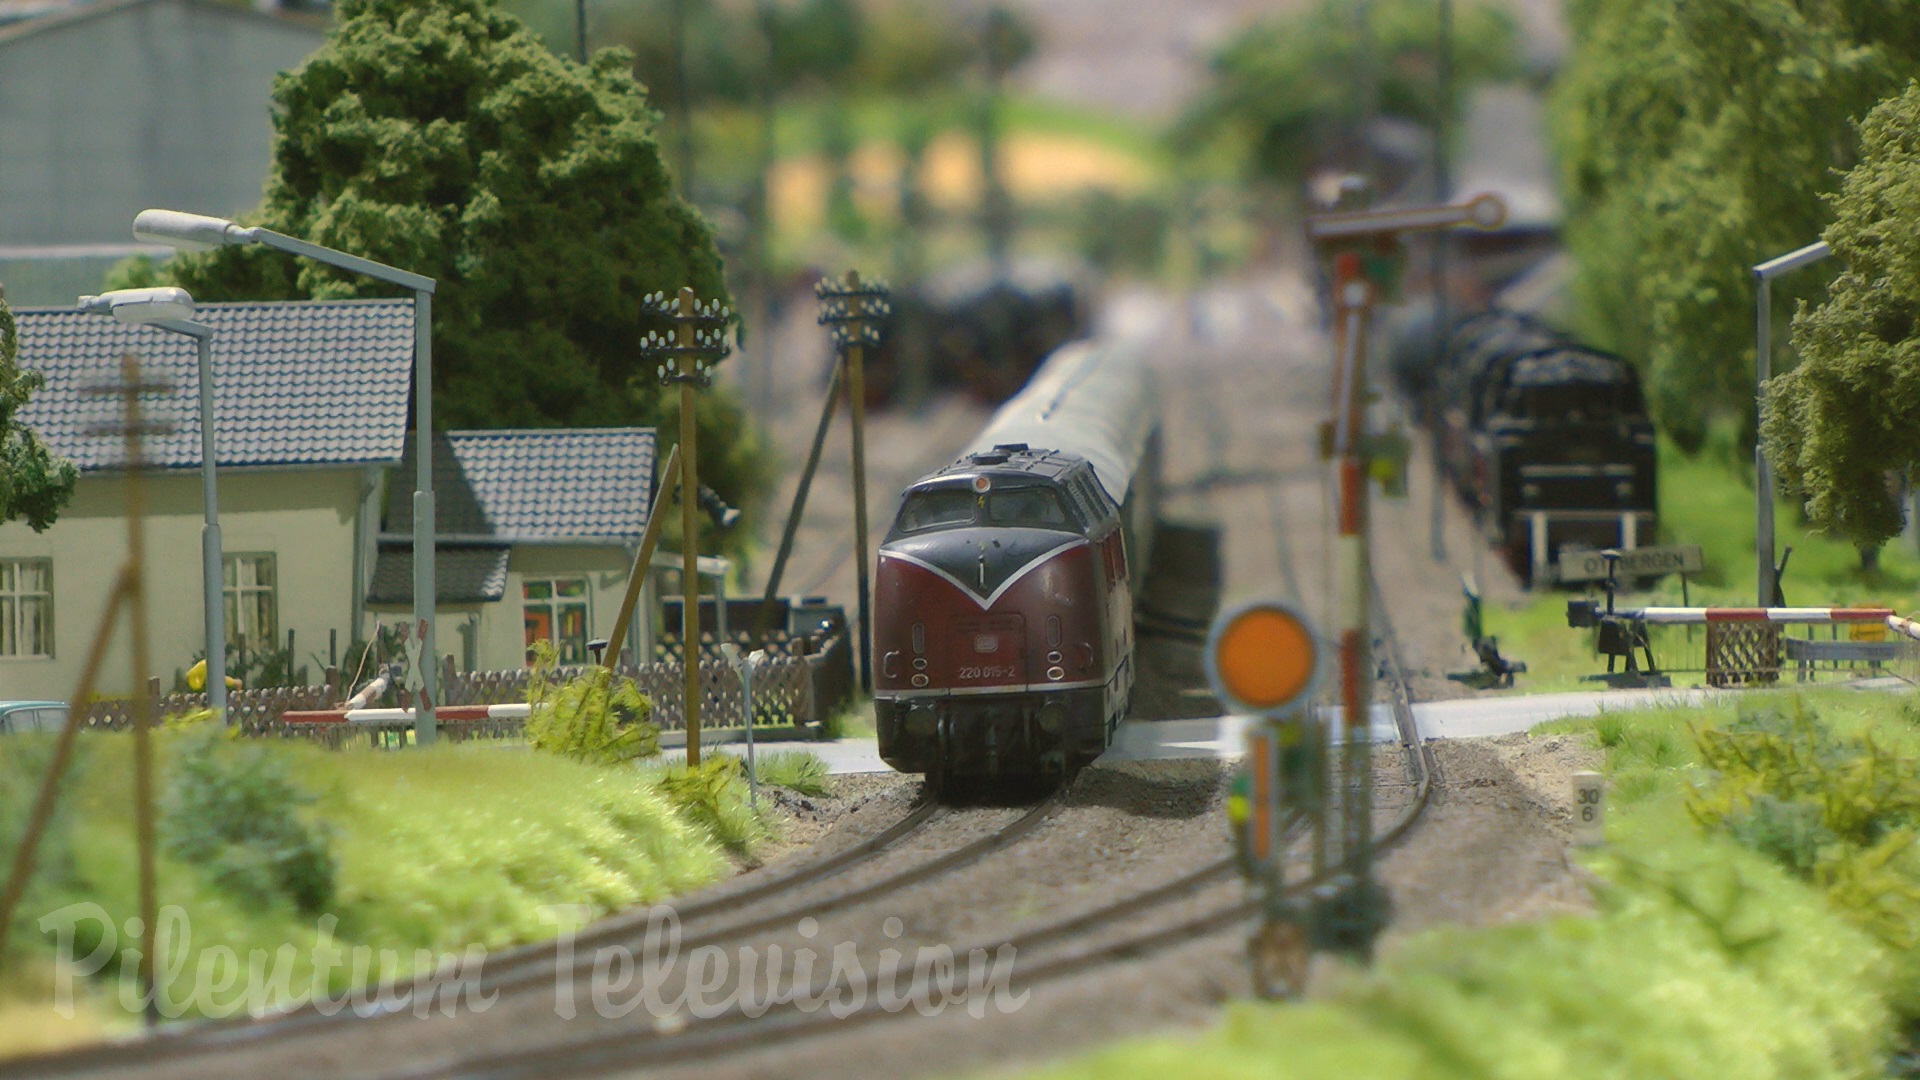 תערוכת הרכבות בגרמניה: בתערוכה משתקף העתק מדויק של הרכבות הקיימות במציאות